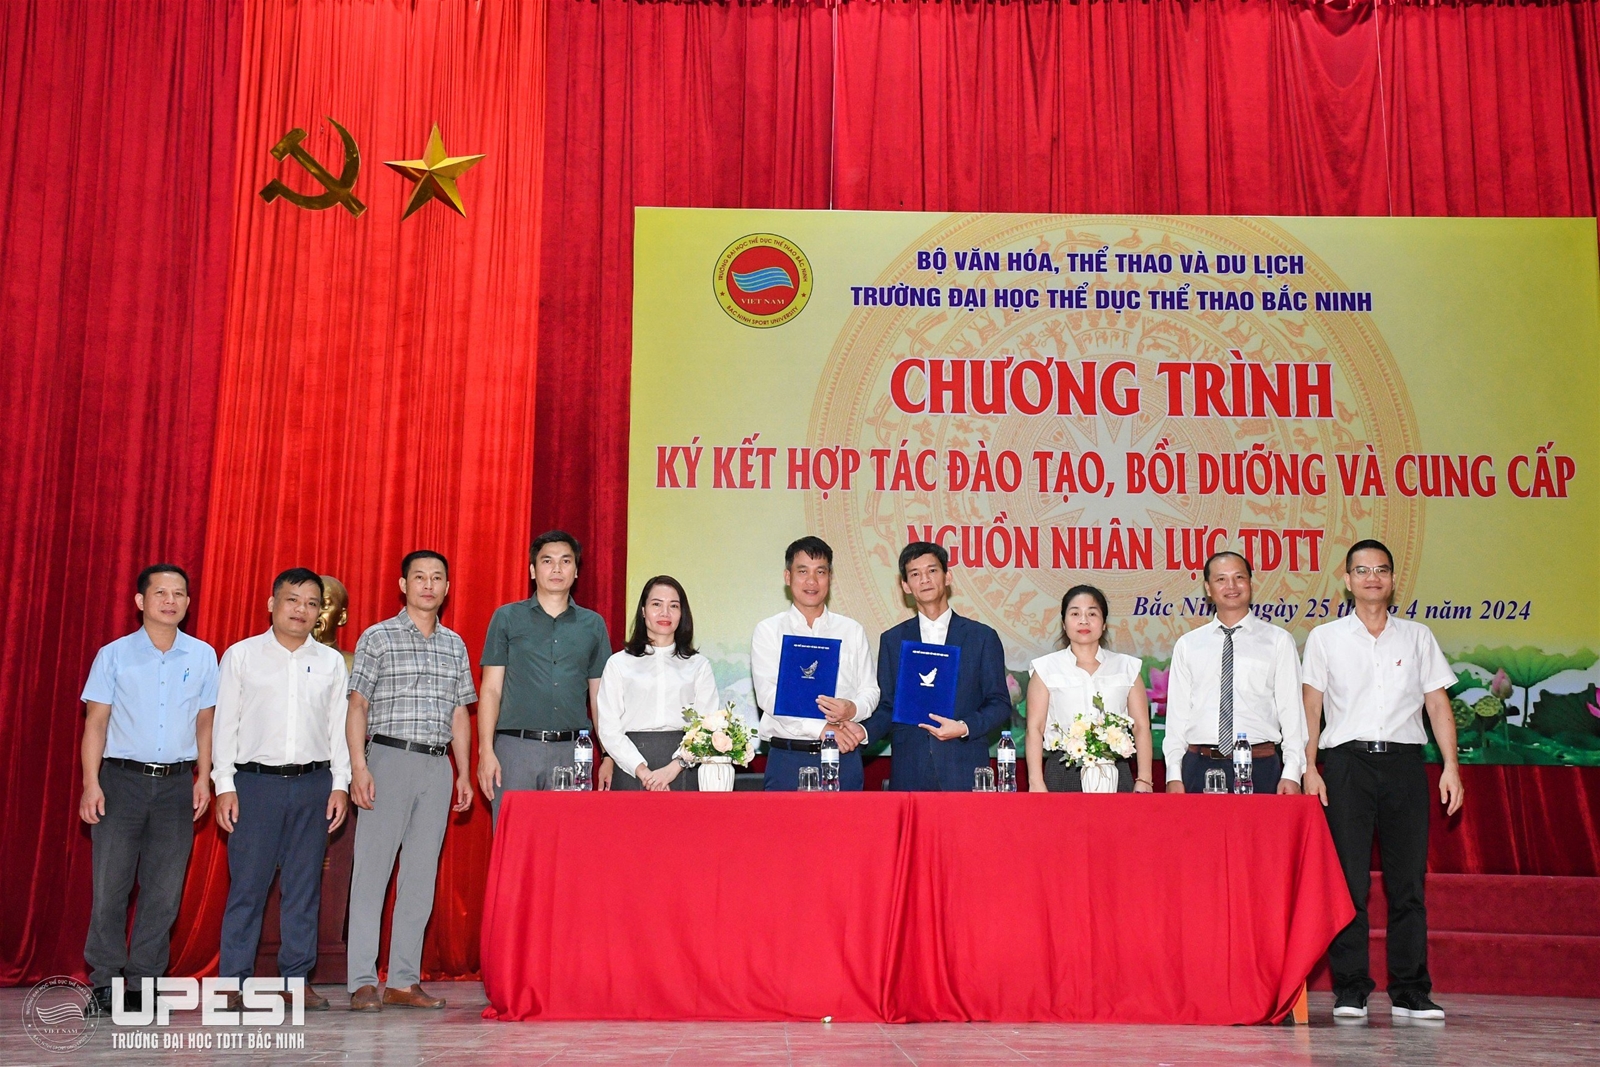 Chương trình ký kết hợp tác đào tạo, bồi dưỡng và cung cấp nguồn nhân lực TDTT tại Trường Đại học TDTT Bắc Ninh năm 2024 - Ảnh 3.